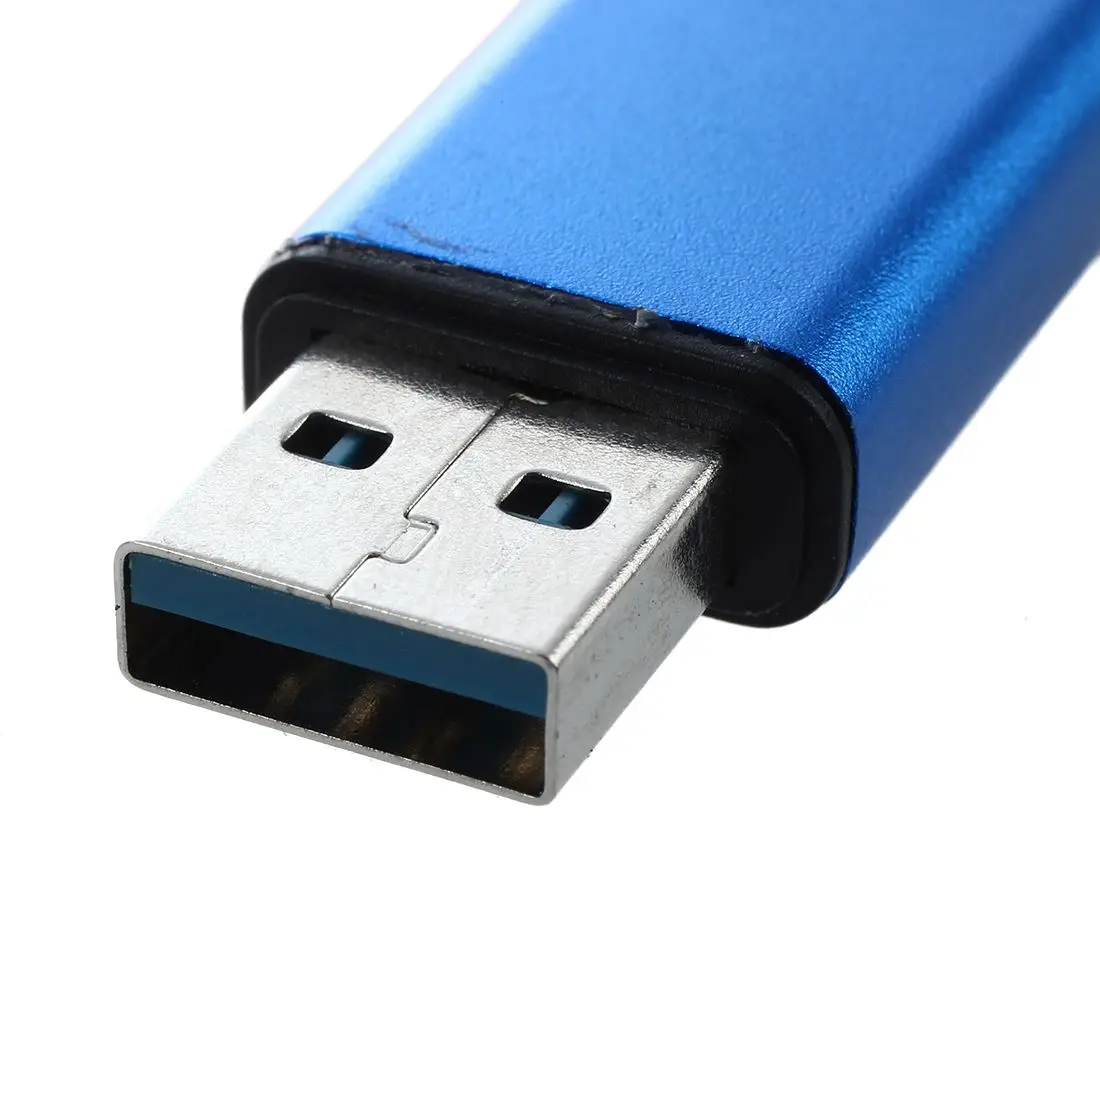 16 ГБ Memory Stick USB Stick 3,0 USB флеш-накопитель флеш-диск синий